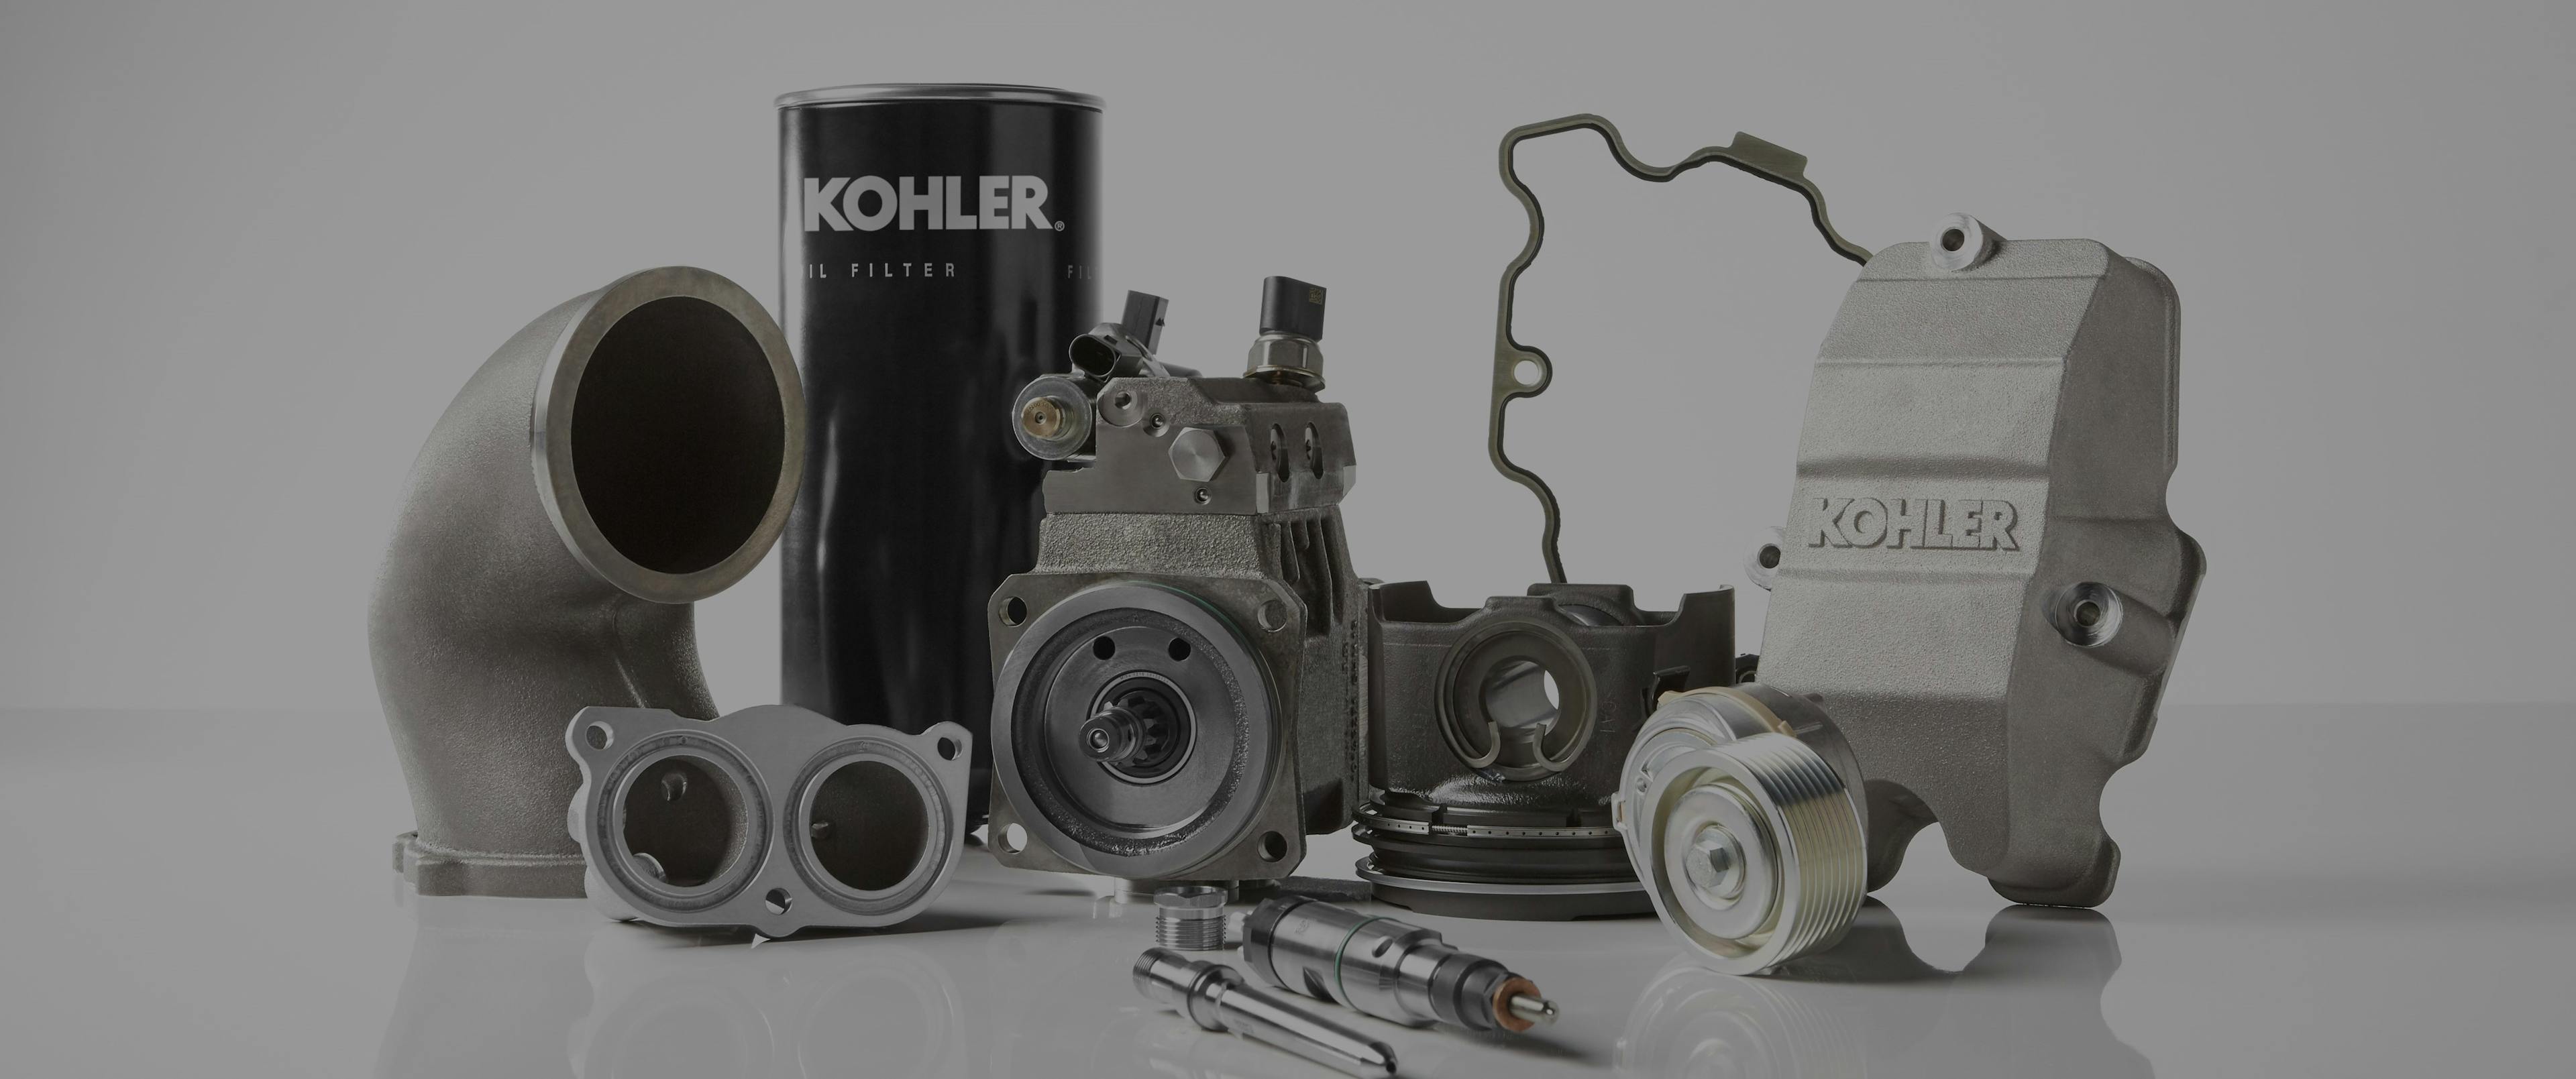 Kohler Genuine parts for generator sets